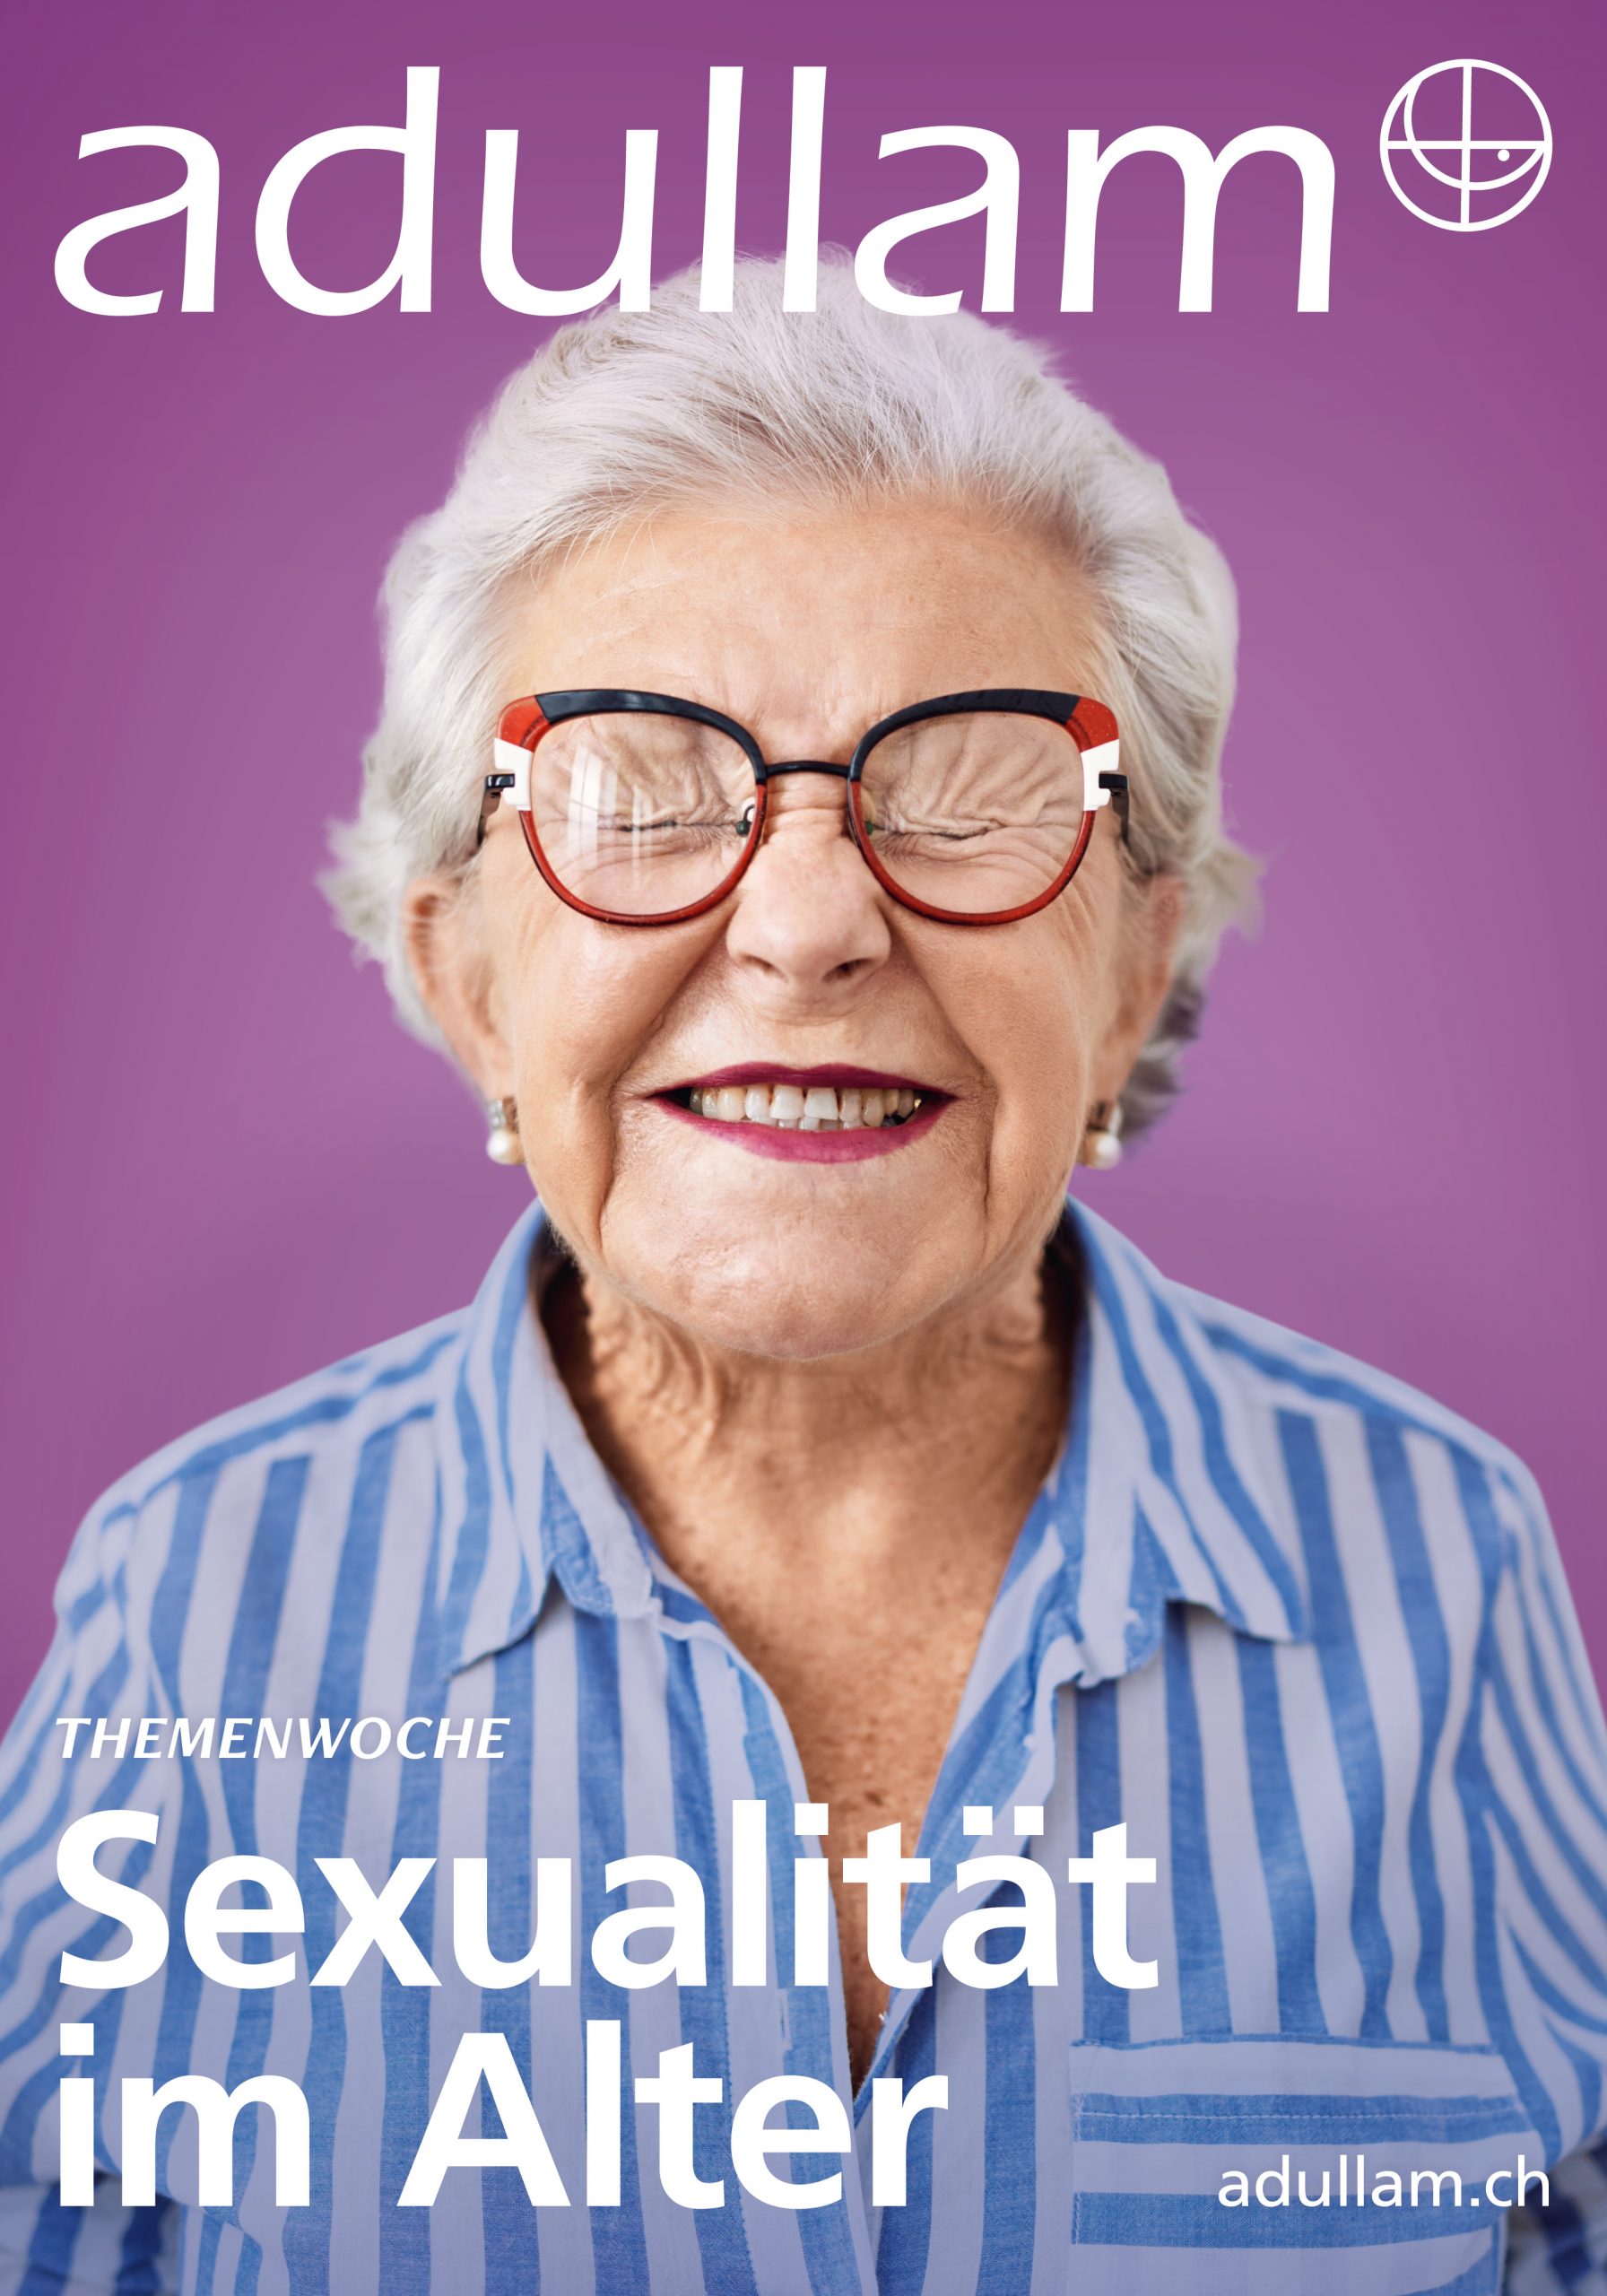 Plakat 1 der Kampagne "Sexualität im Alter"